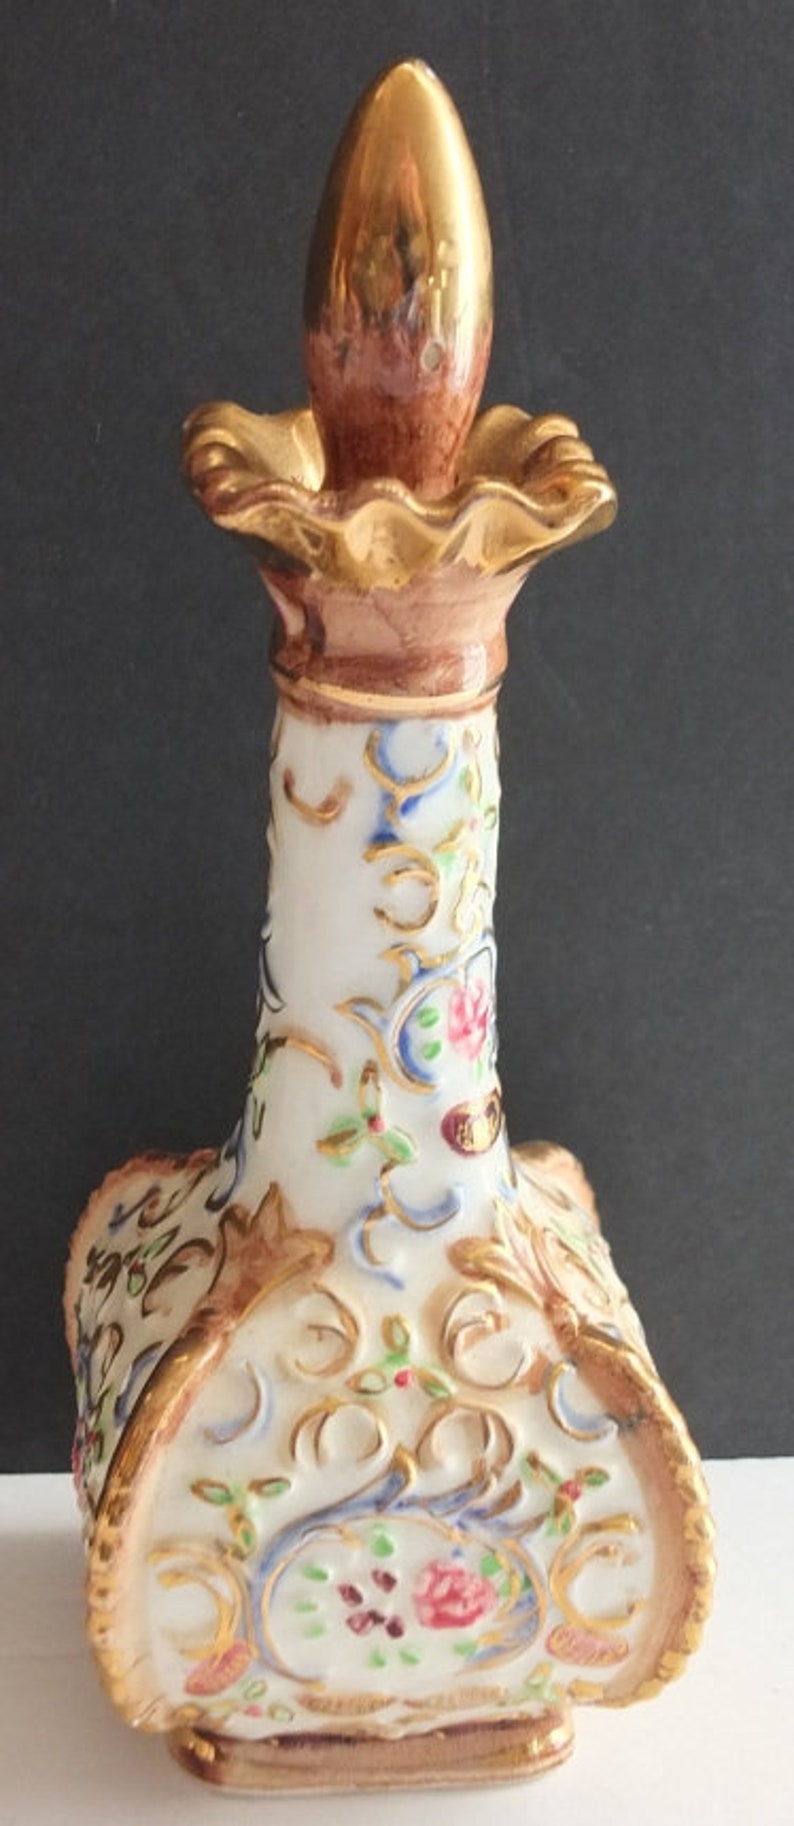 Vintage Floral Ceramic Perfume Bottle Cork Stopper image 1